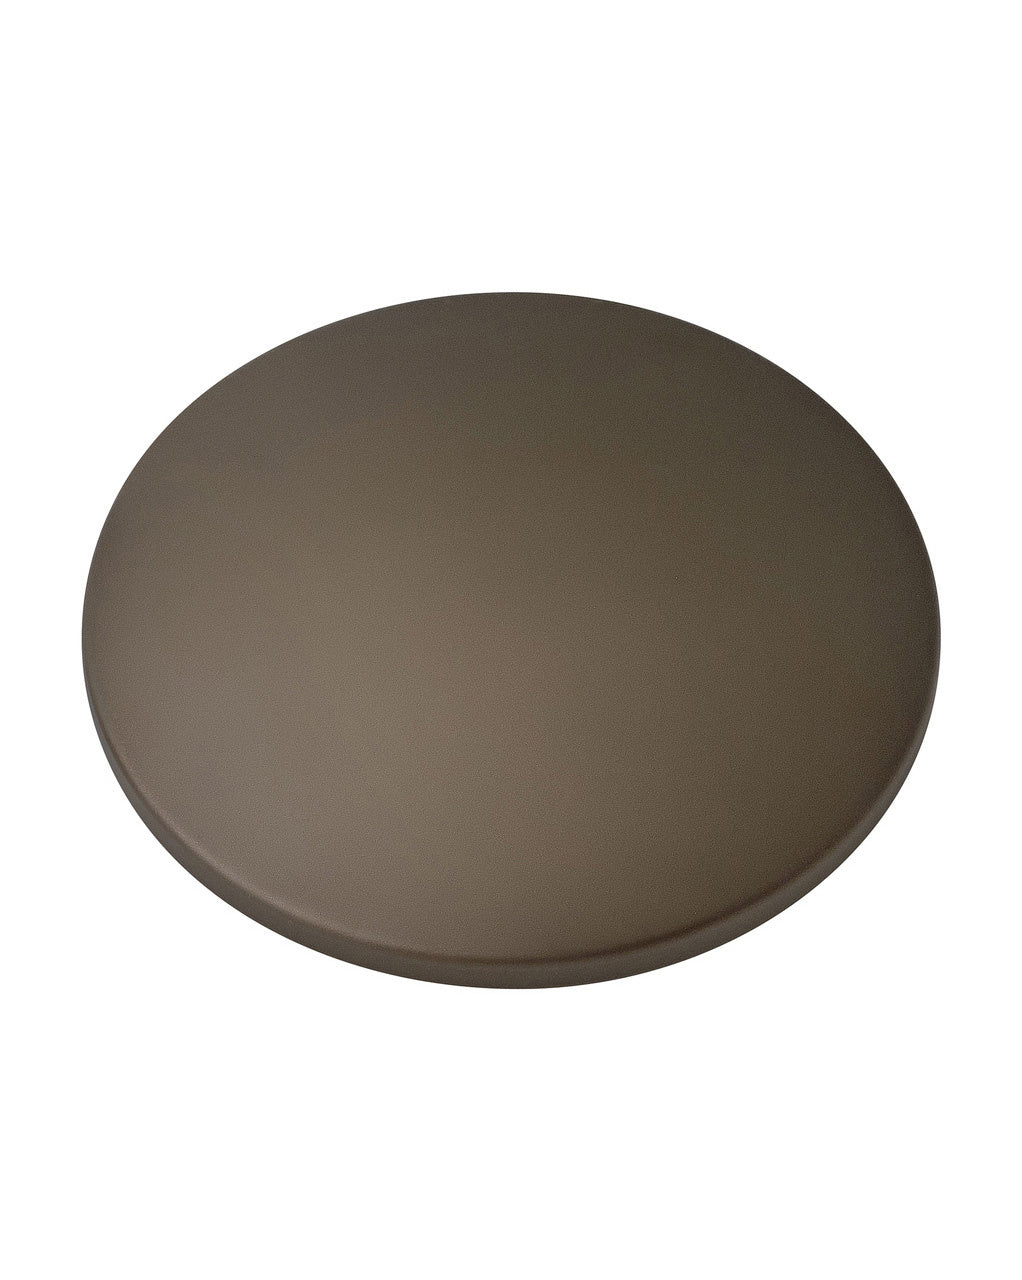 Hinkley - 932027FMM - Light Kit Cover - Light Kit Cover - Metallic Matte Bronze